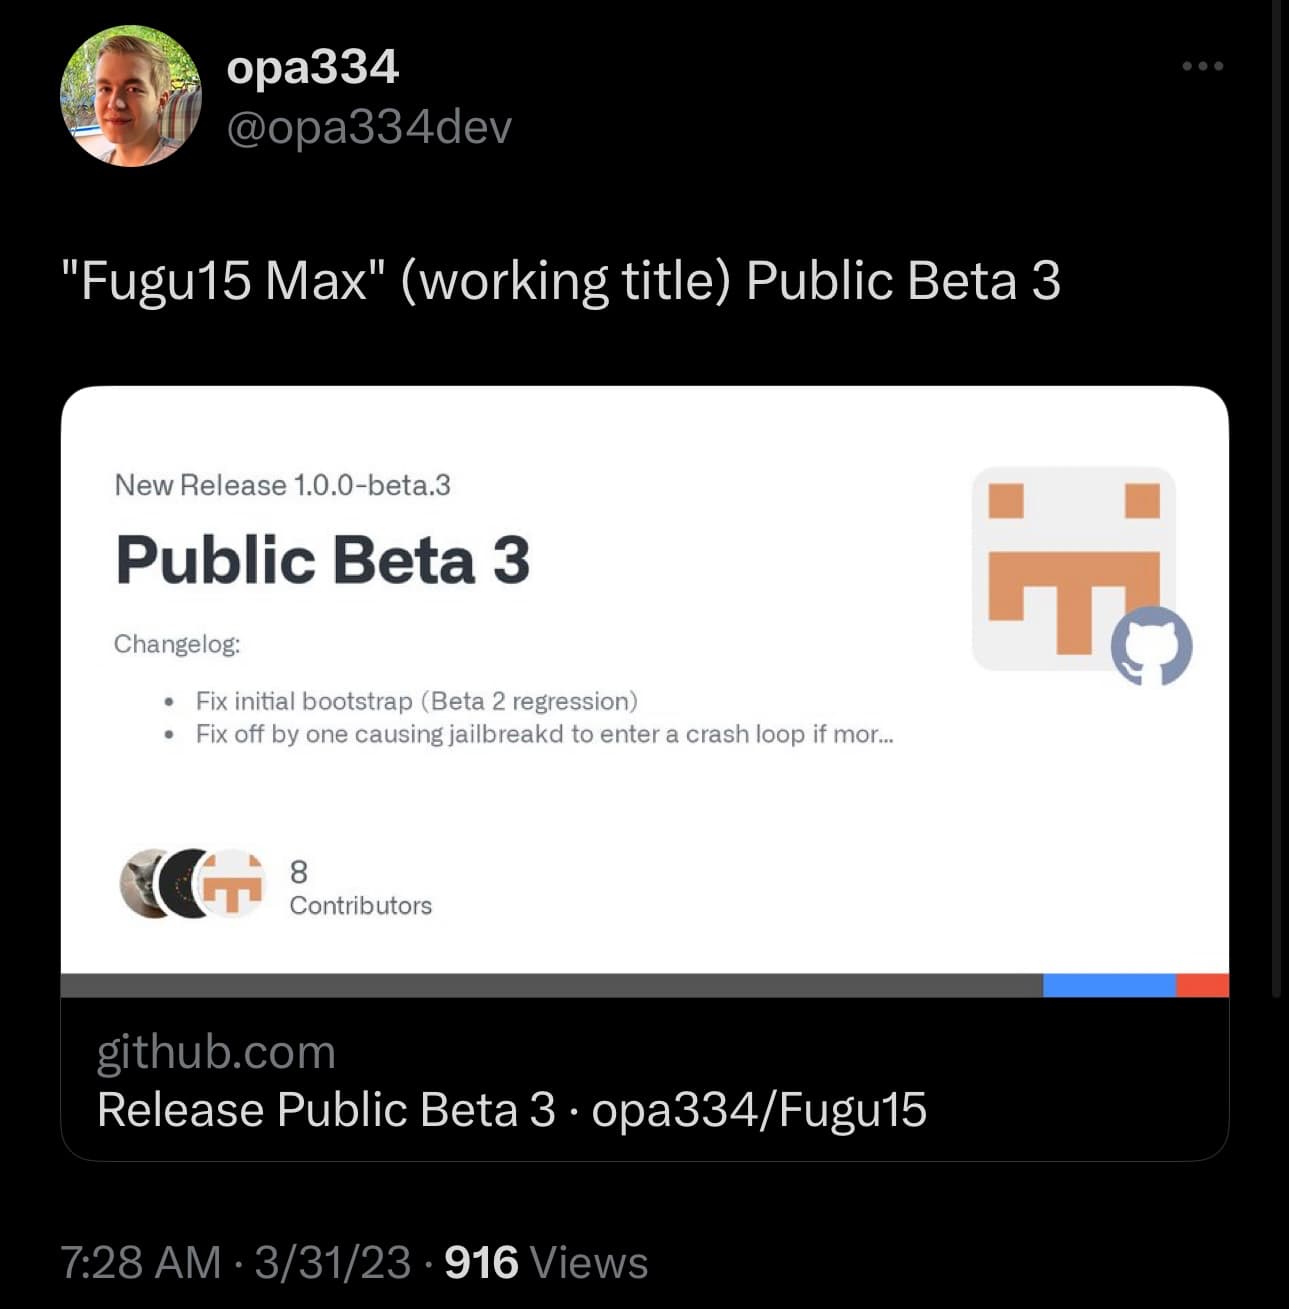 Opa334 releases third Fugu15 Max public beta.